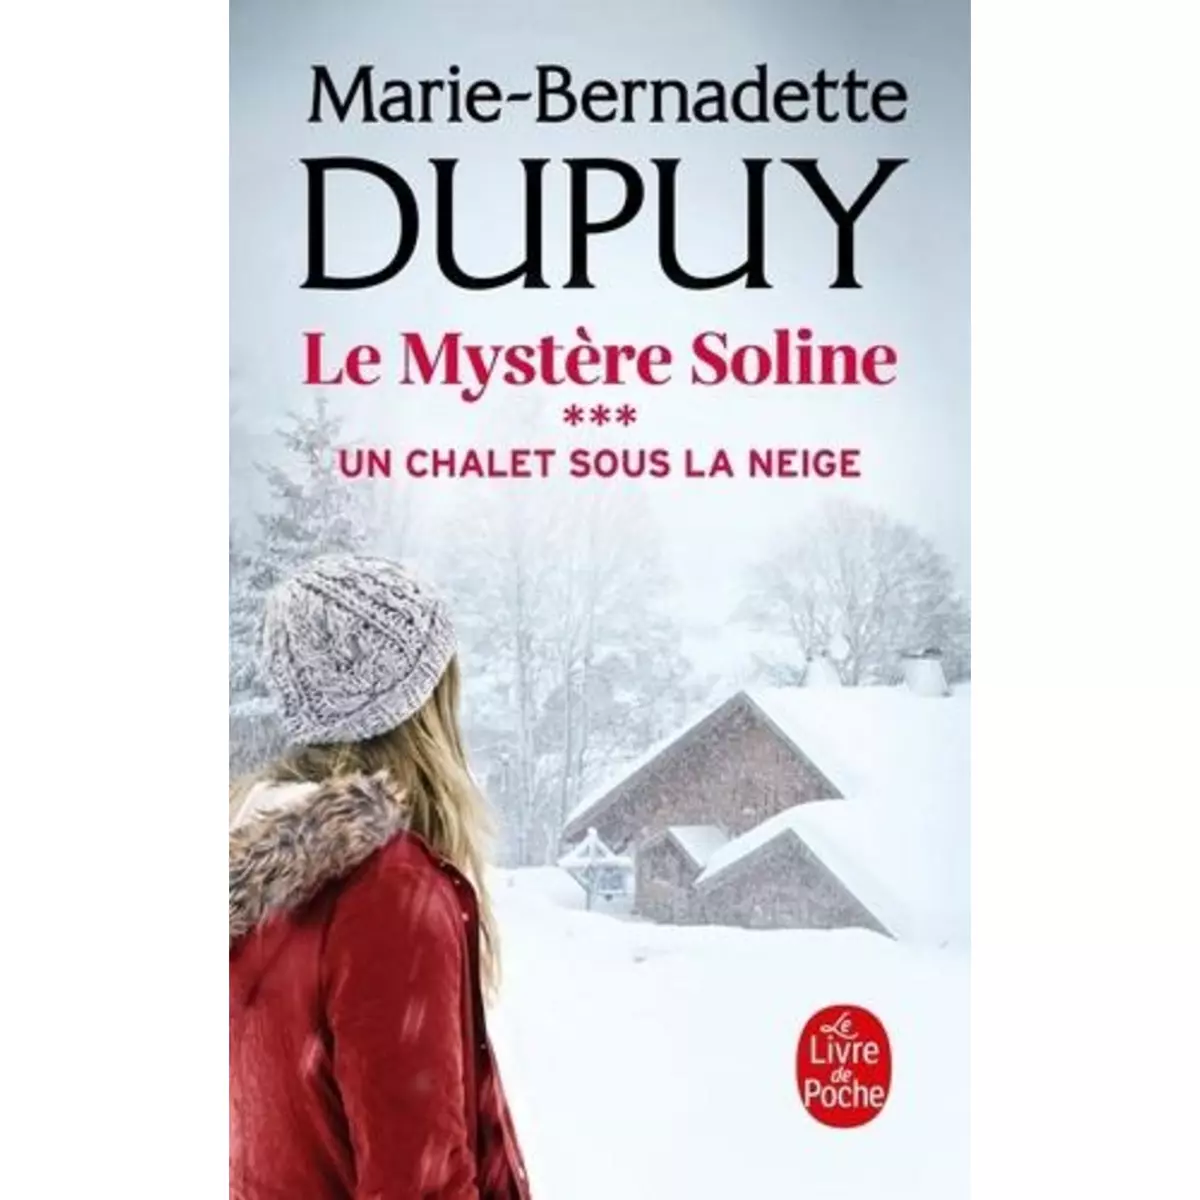  LE MYSTERE SOLINE TOME 3 : UN CHALET SOUS LA NEIGE, Dupuy Marie-Bernadette